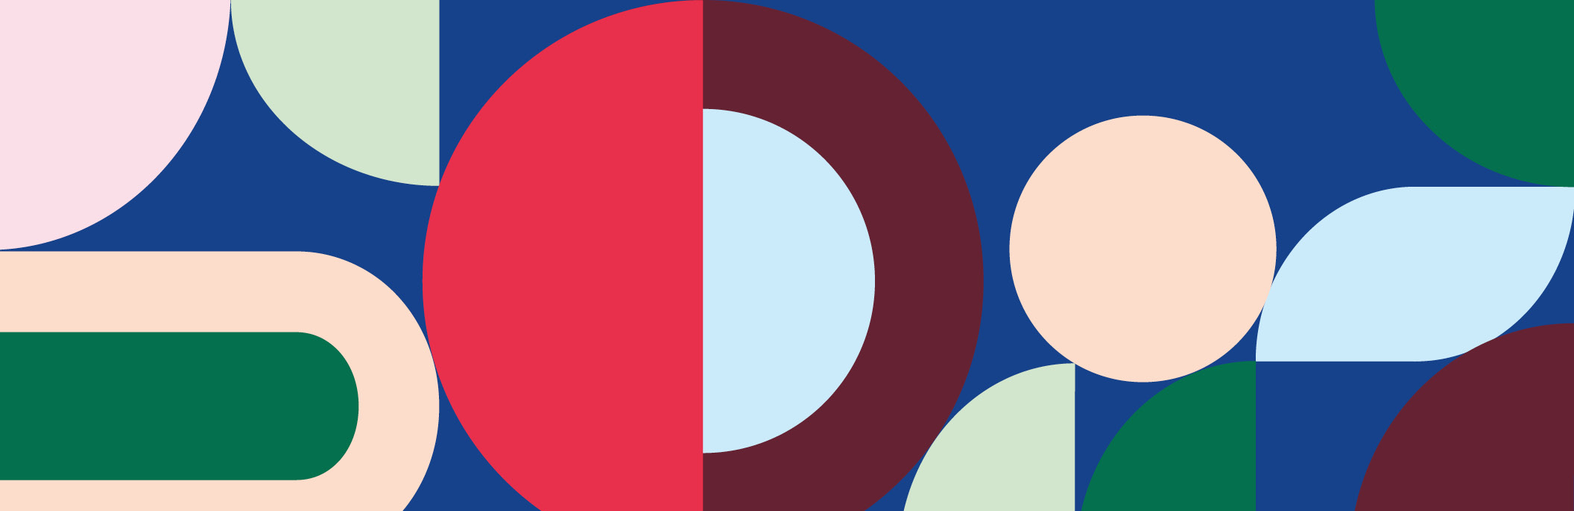 Illustration av cirklar i olika färger.